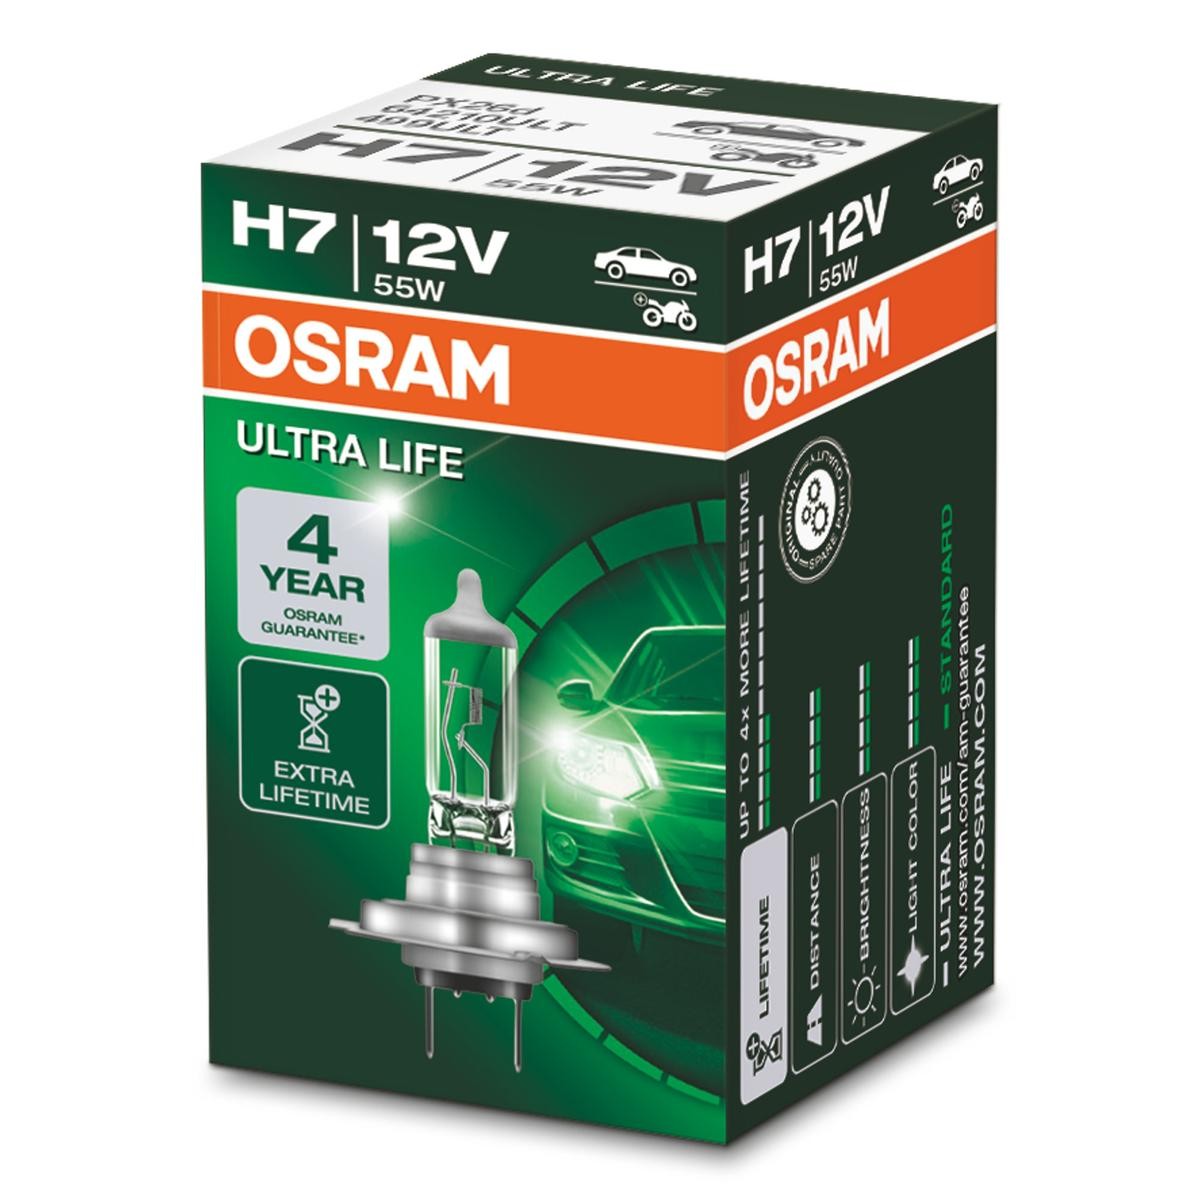 H7 OSRAM ULTRA LIFE H7 12V 55W PX26d 3200K Halogen Glödlampa, fjärrstrålkastare 64210ULT köp lågt pris